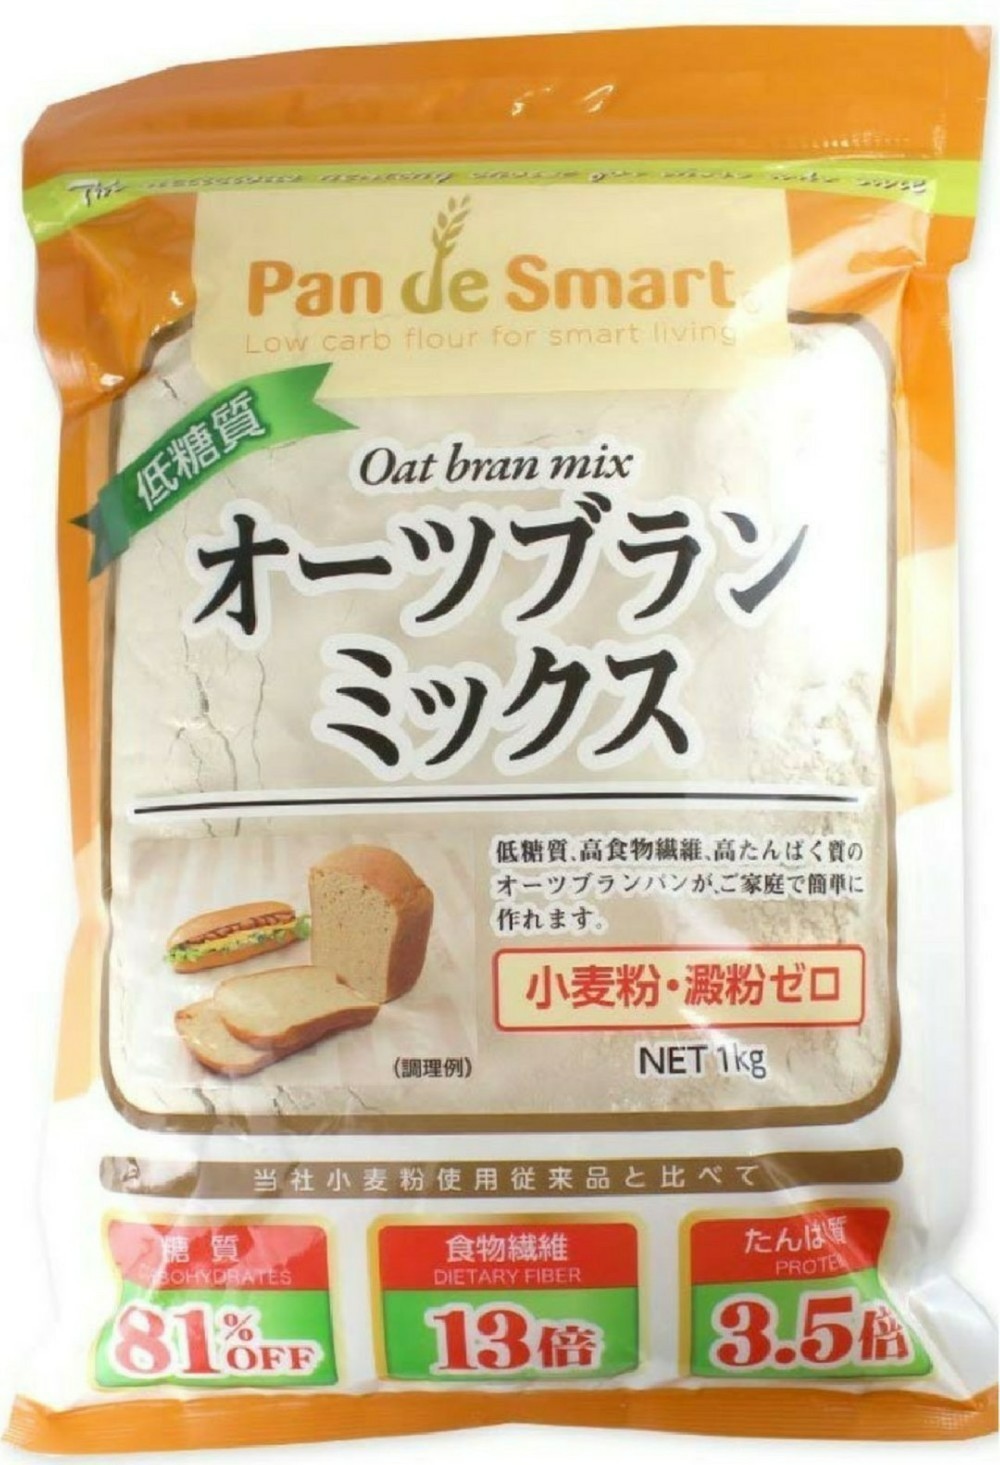 市場 糖質制限 糖質オフ パン 糖質制限パン 低糖質 小麦粉不使用 低糖質パン ブランパン 低糖質ふすまパン 低カロリーパン オーツ麦ふすまパン5個入り